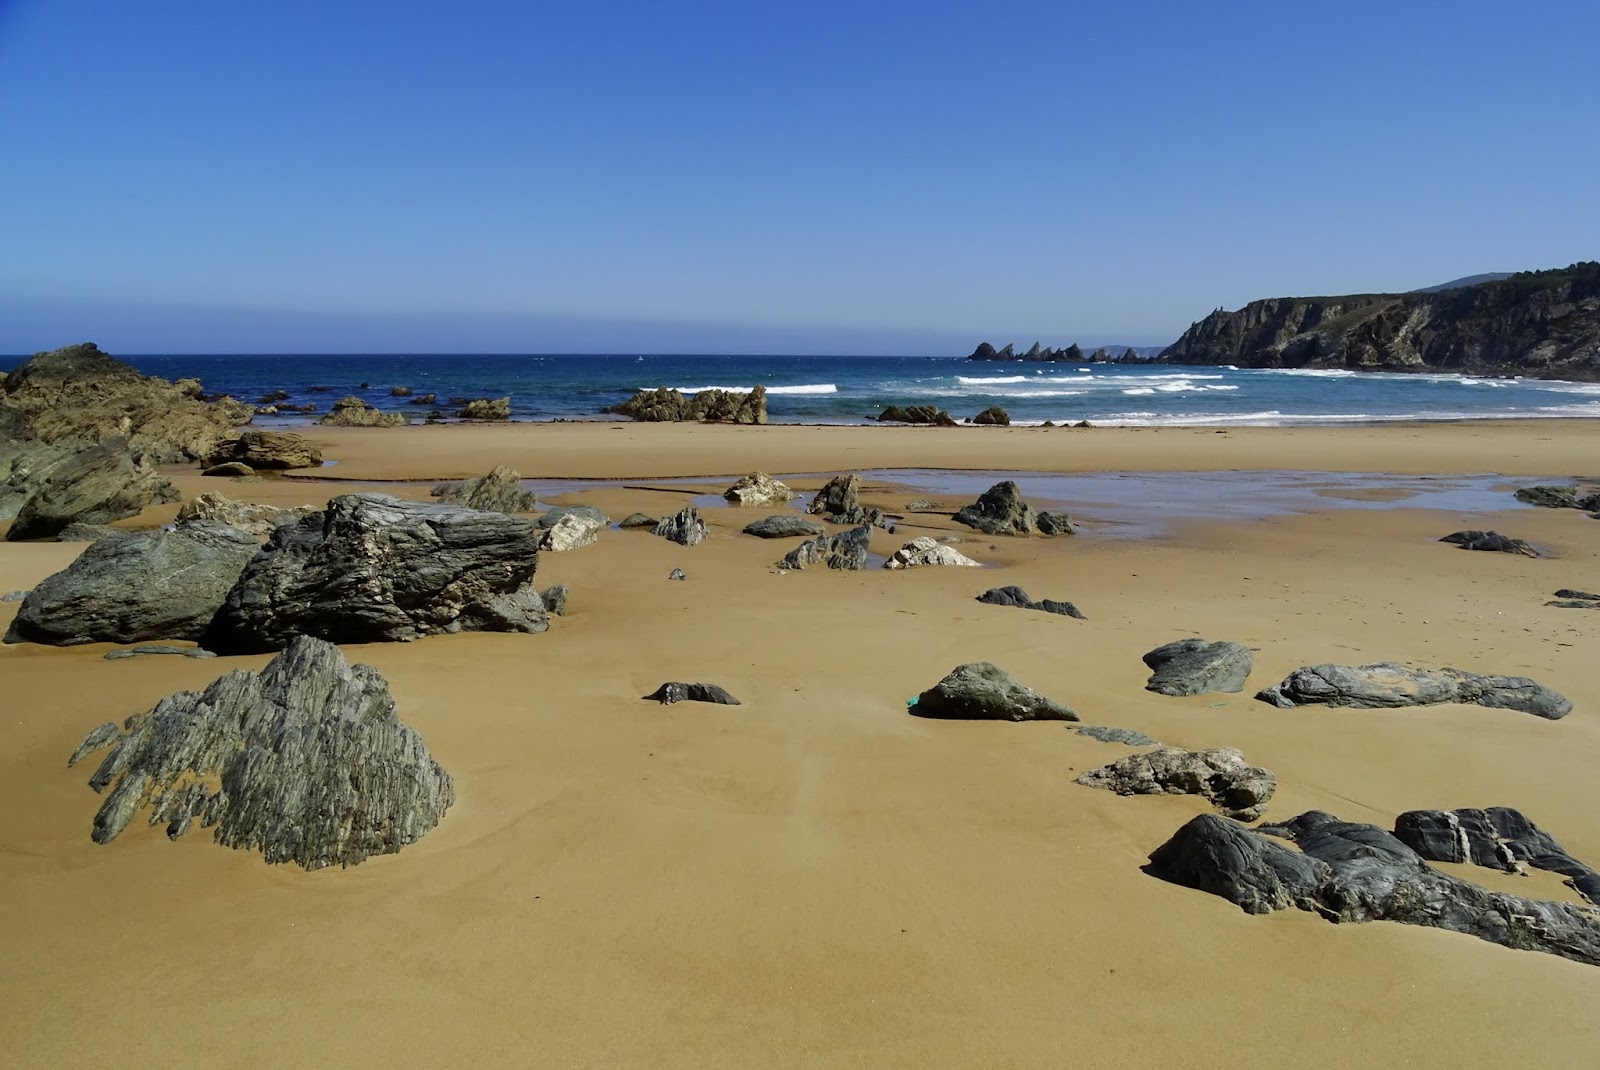 Praia Fabrega'in fotoğrafı parlak ince kum yüzey ile